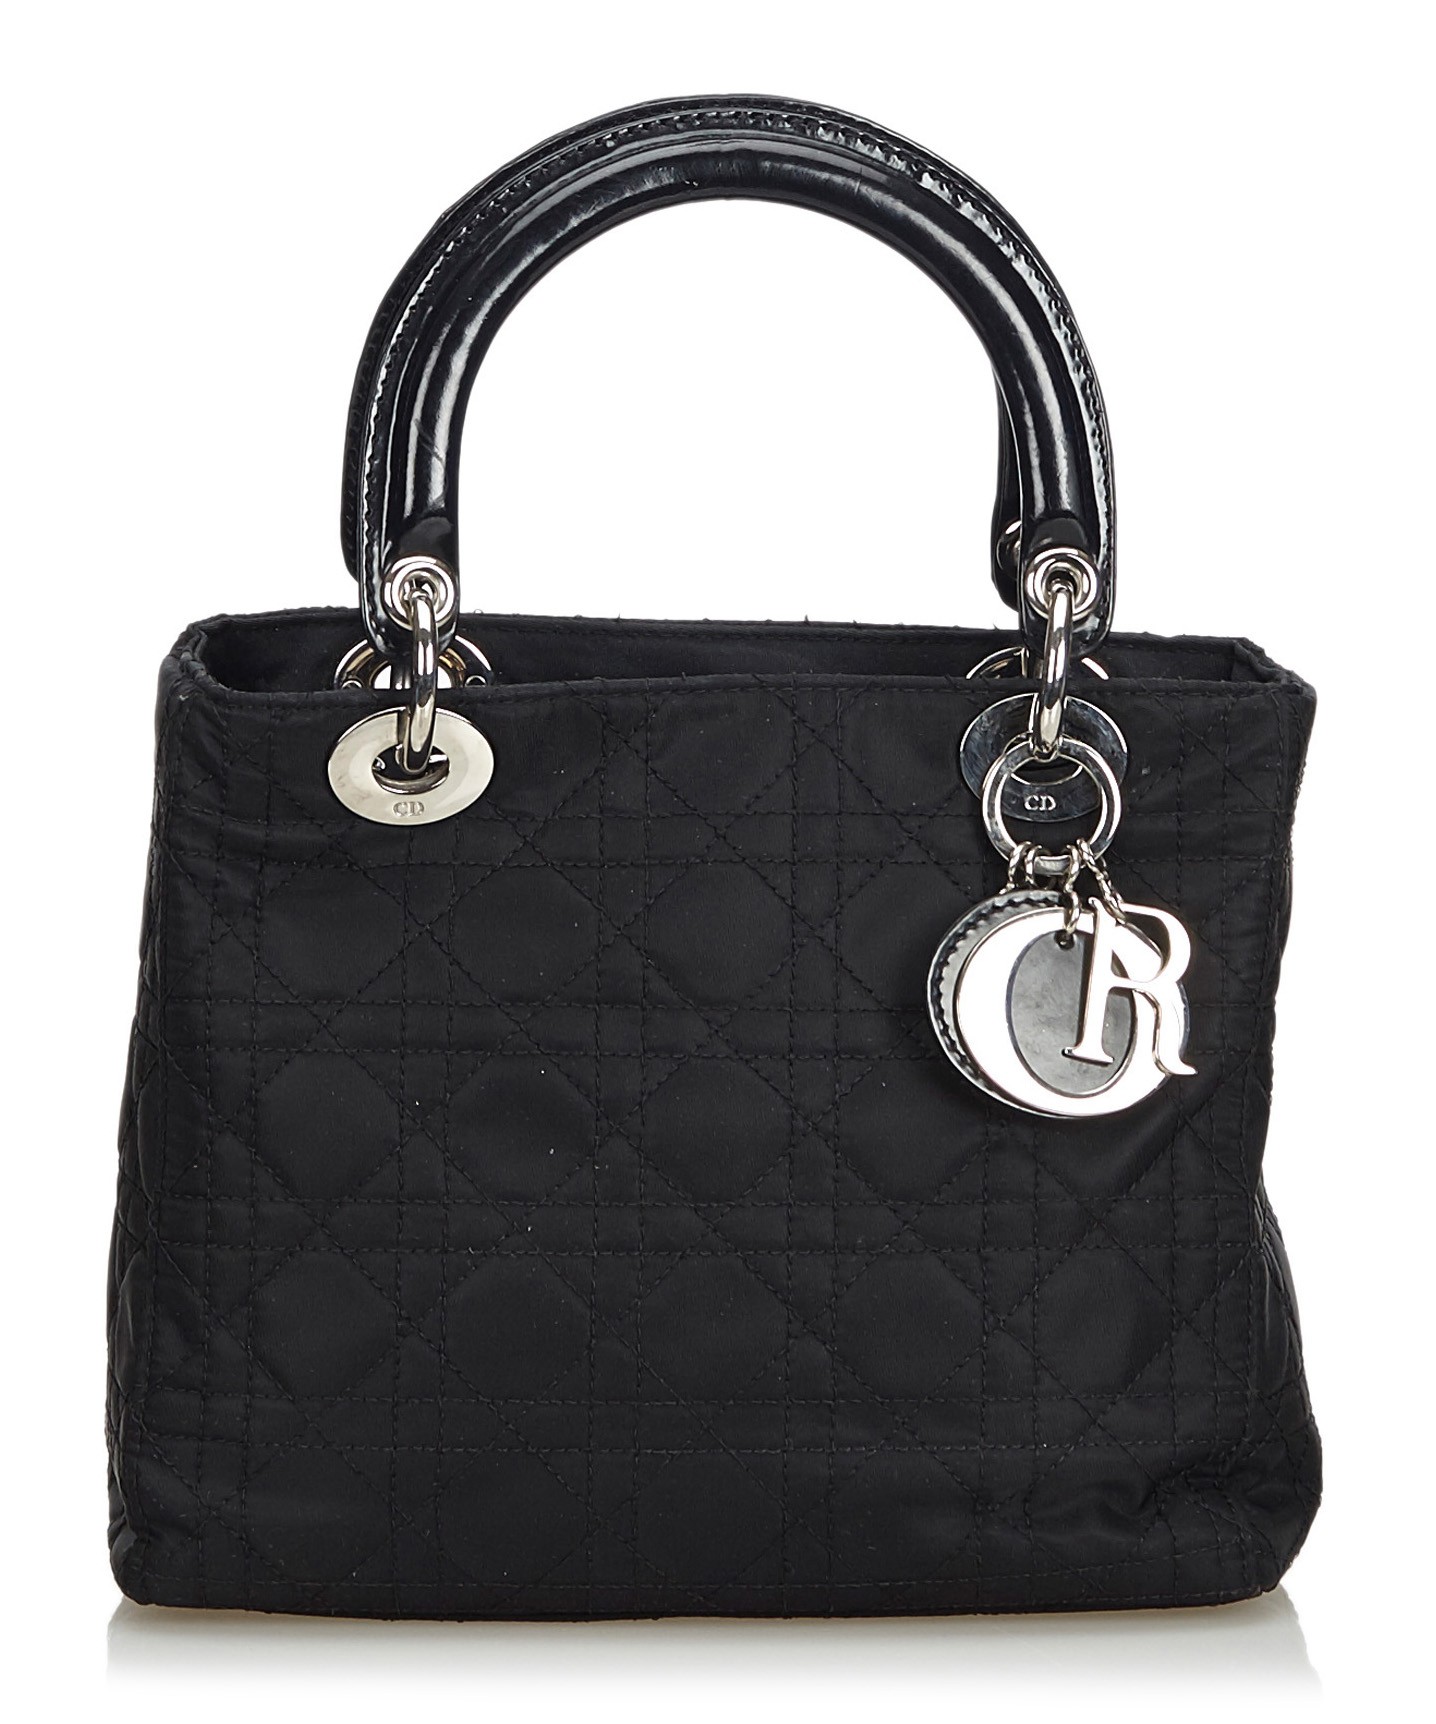 black dior handbag